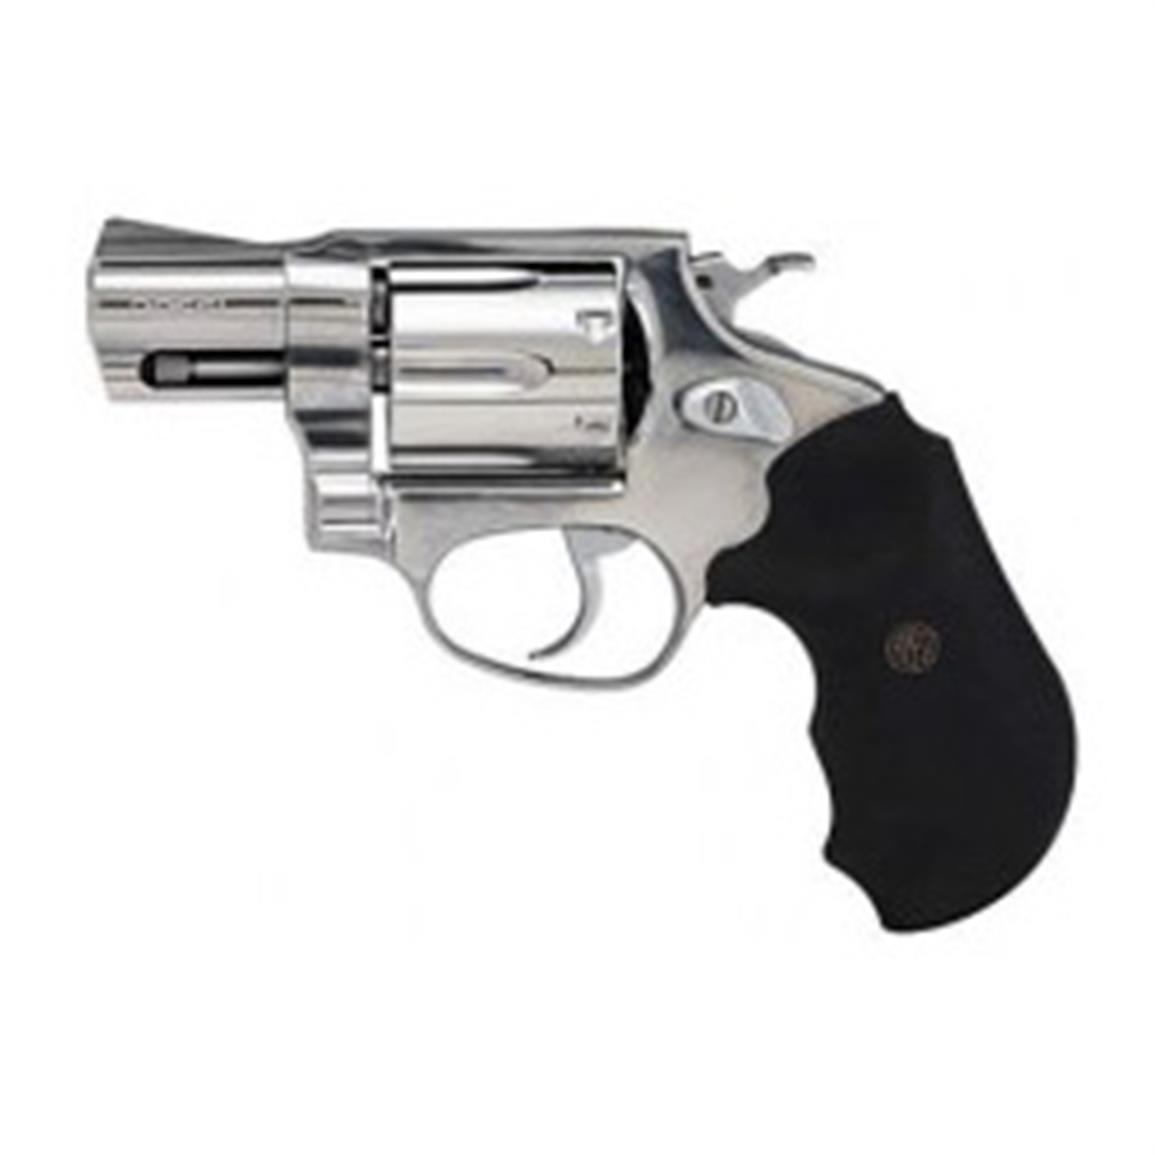 Taurus 9mm Revolver Models